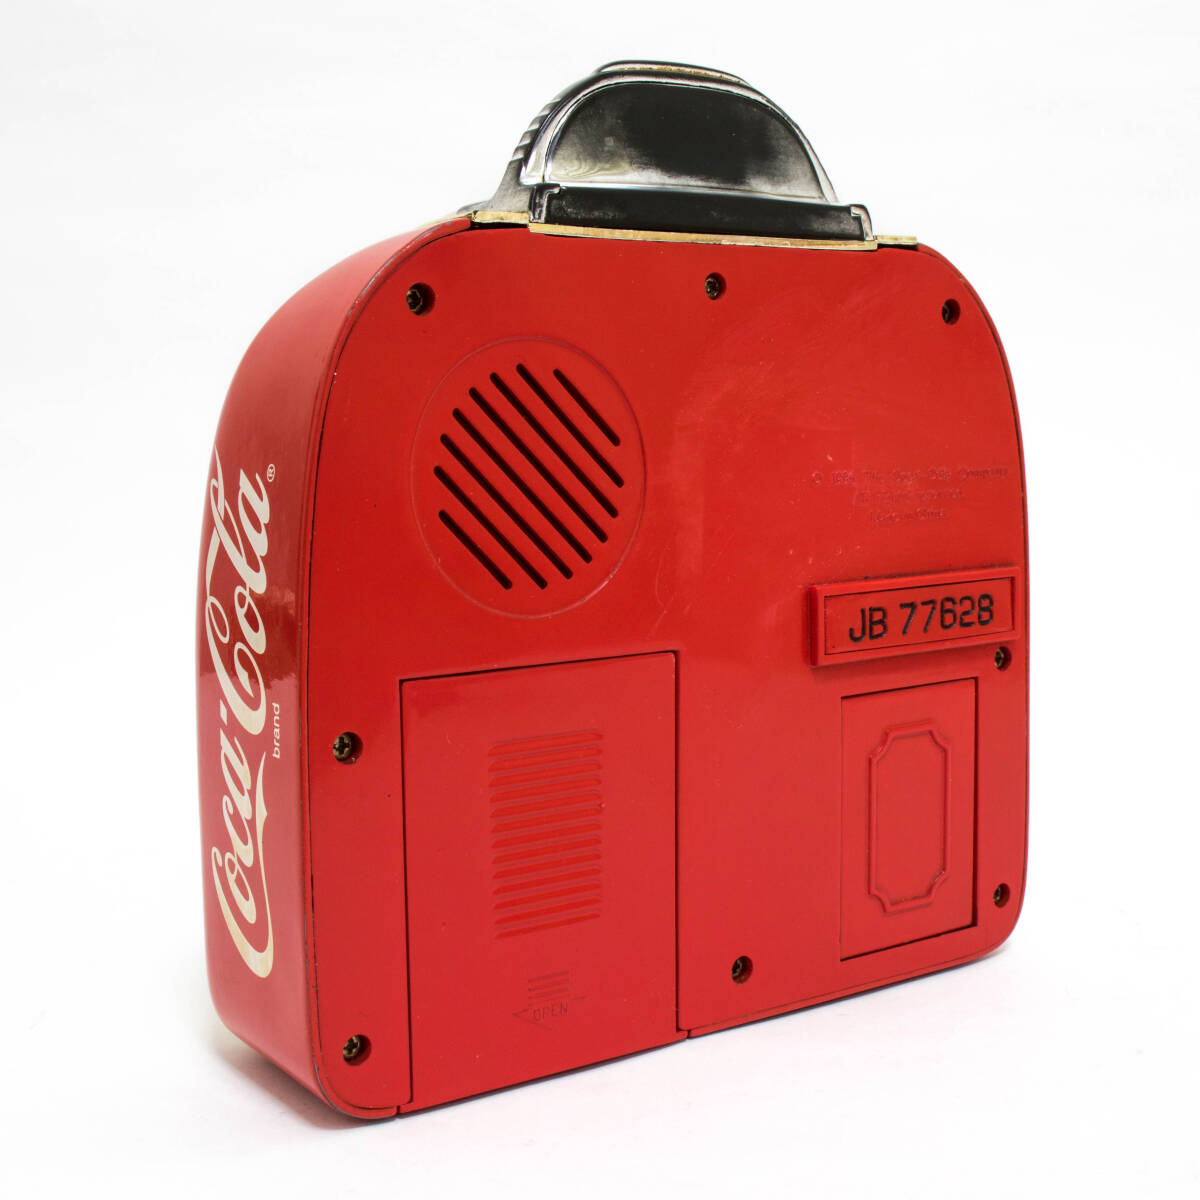 ジャンク品 レア コカコーラ ジュークボックス型 コインバンク 貯金箱 ミュージックバンク Coca-Cola Jukebox Musical Bank 元箱の画像4